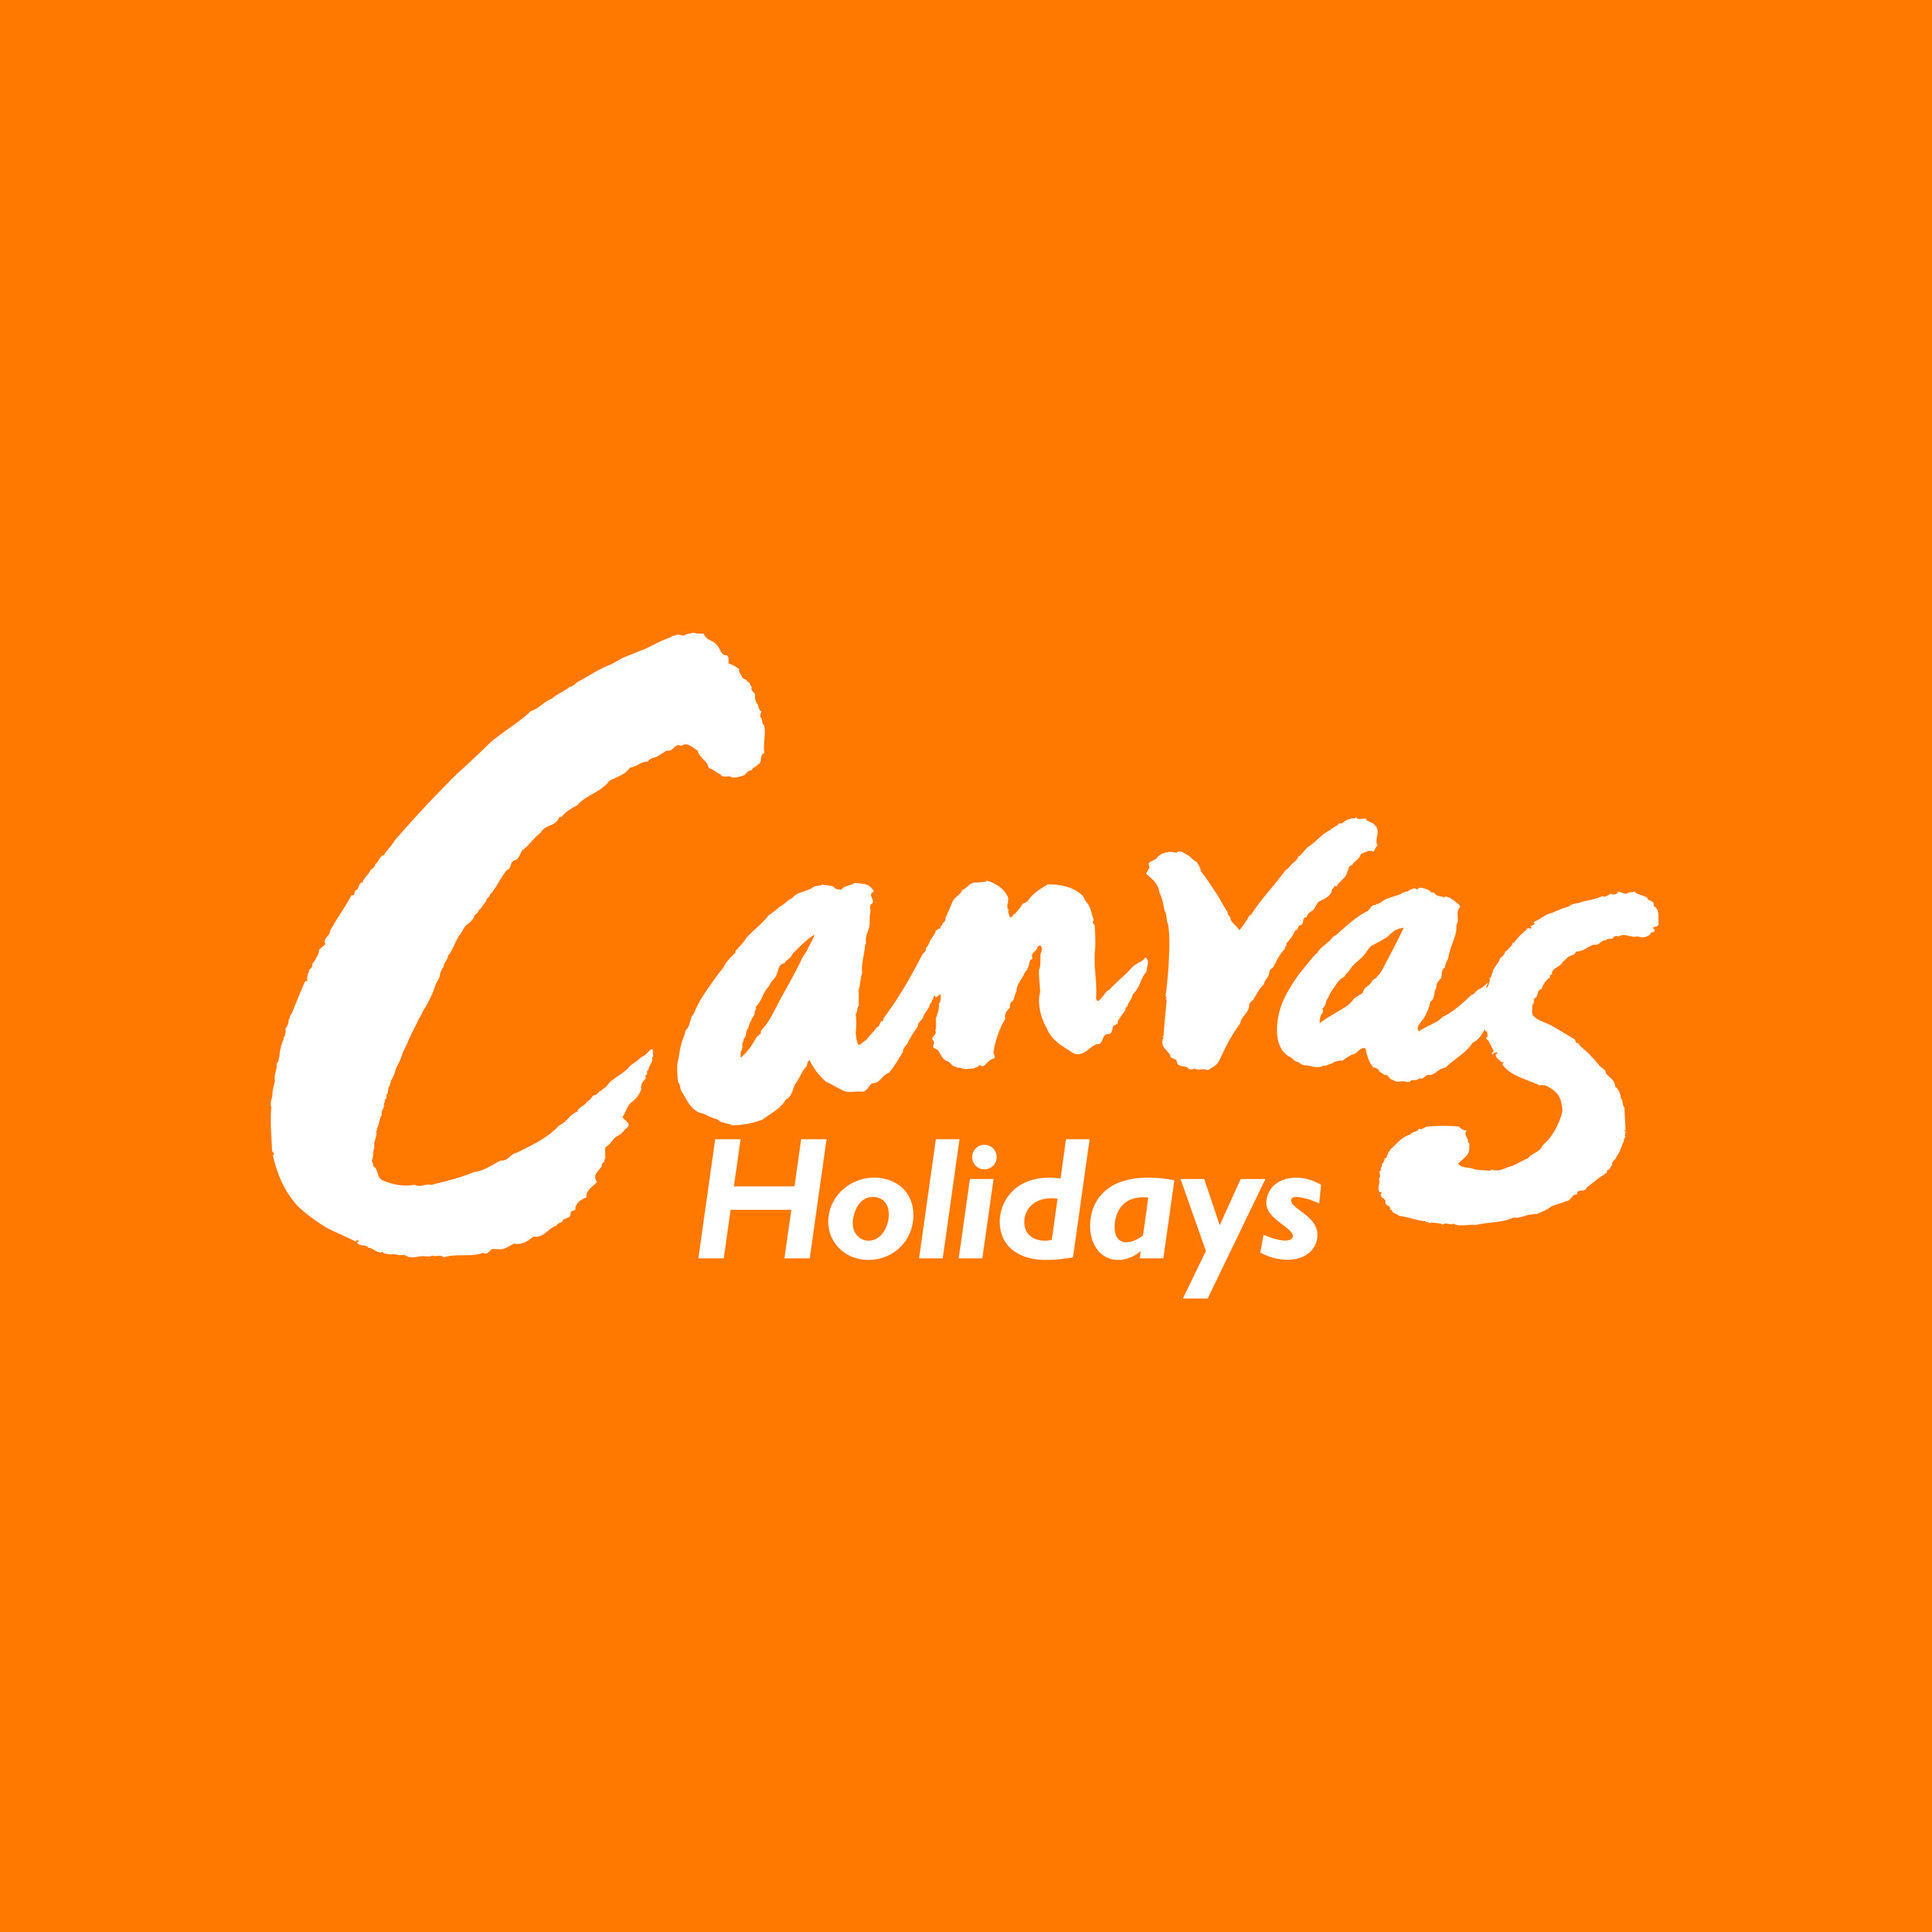 Orange and White Brand Logo - Canvas Holidays white on orange logo - JuggleMum